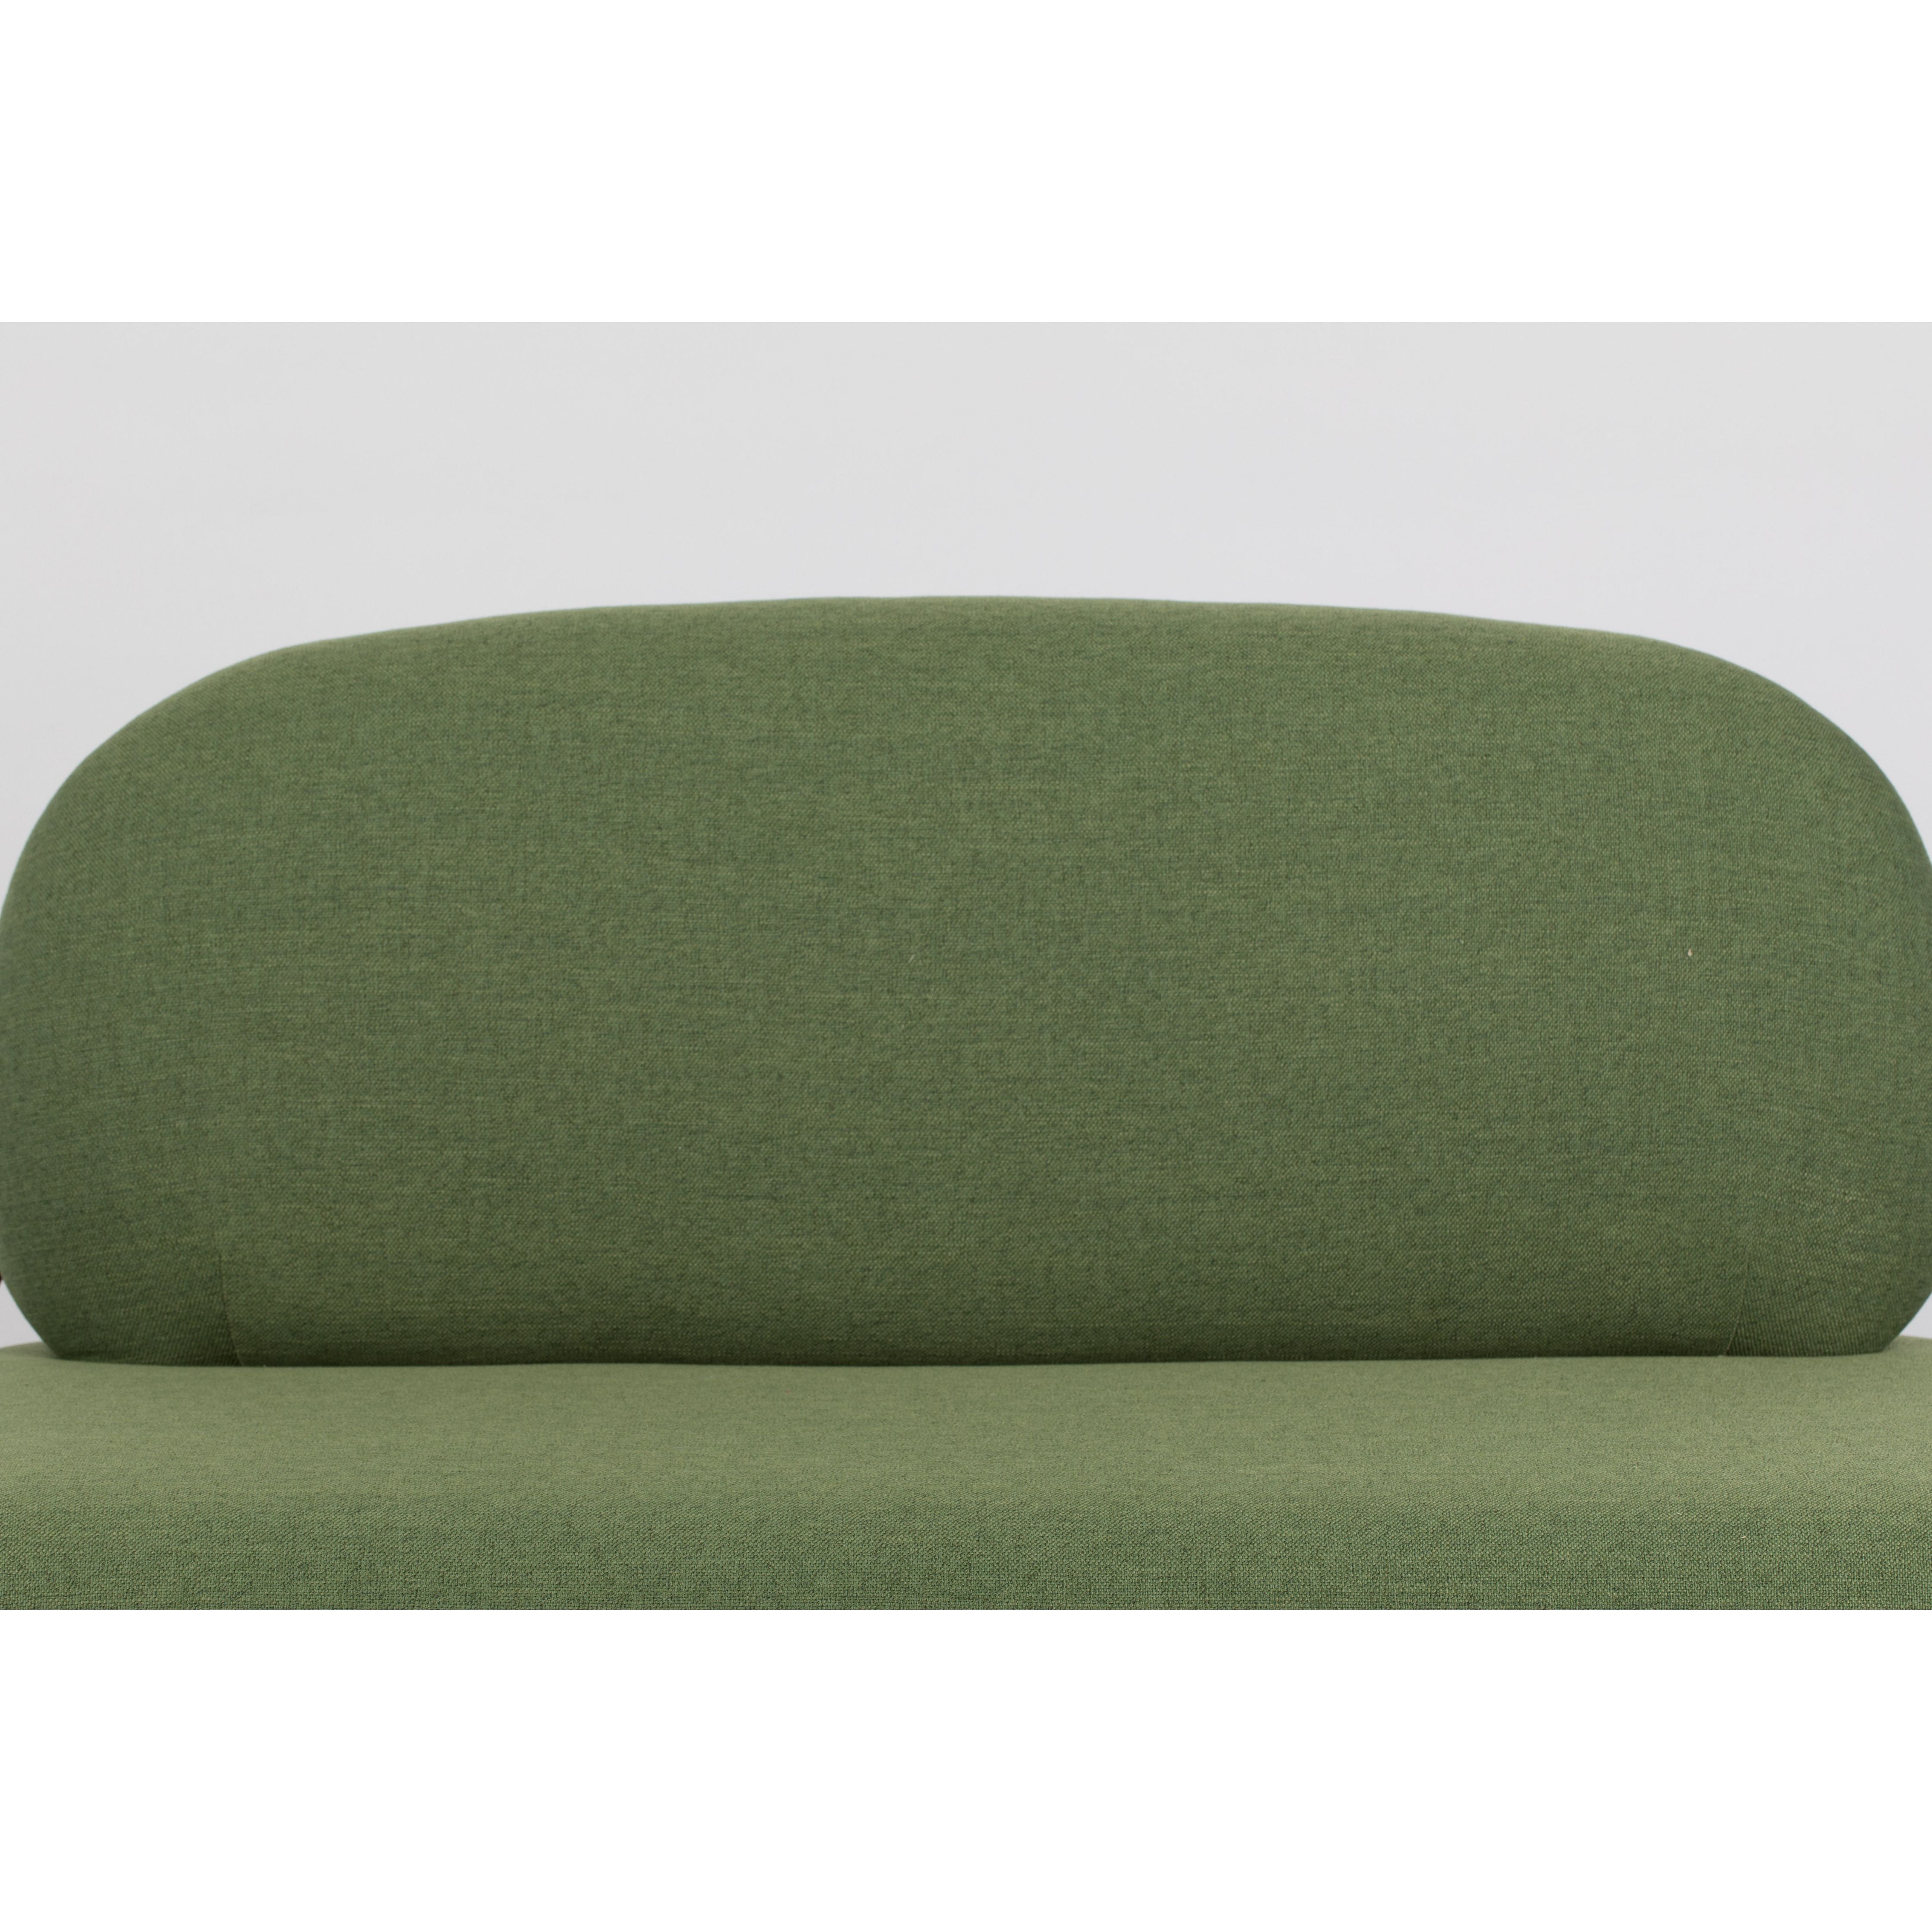 Sofa polly green